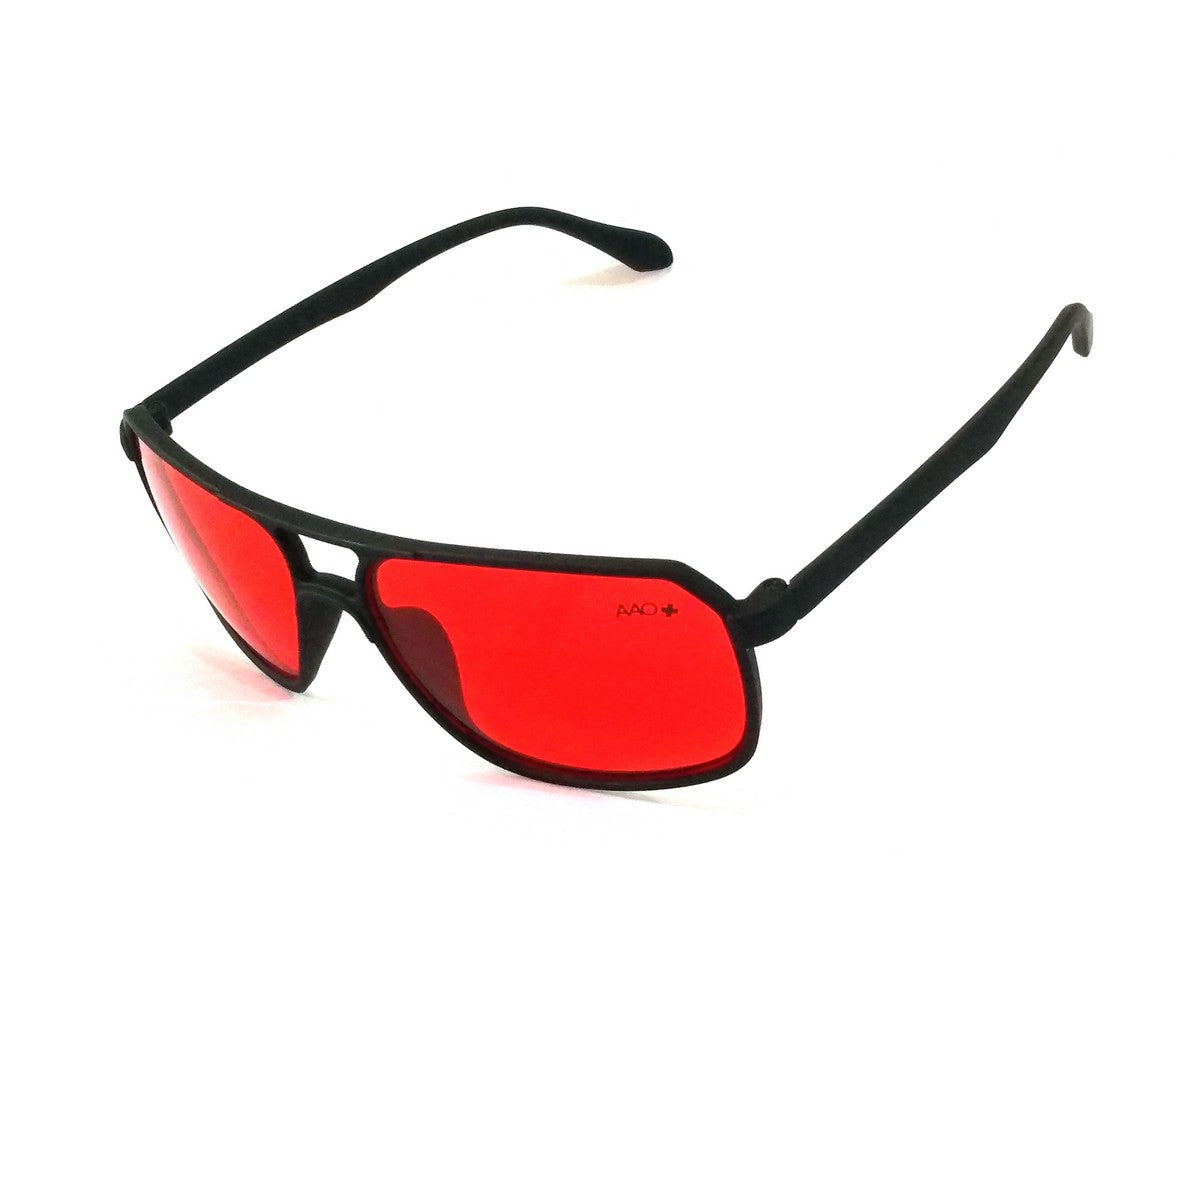 Red Lens Rectangle Sunglasses for Men Women 545